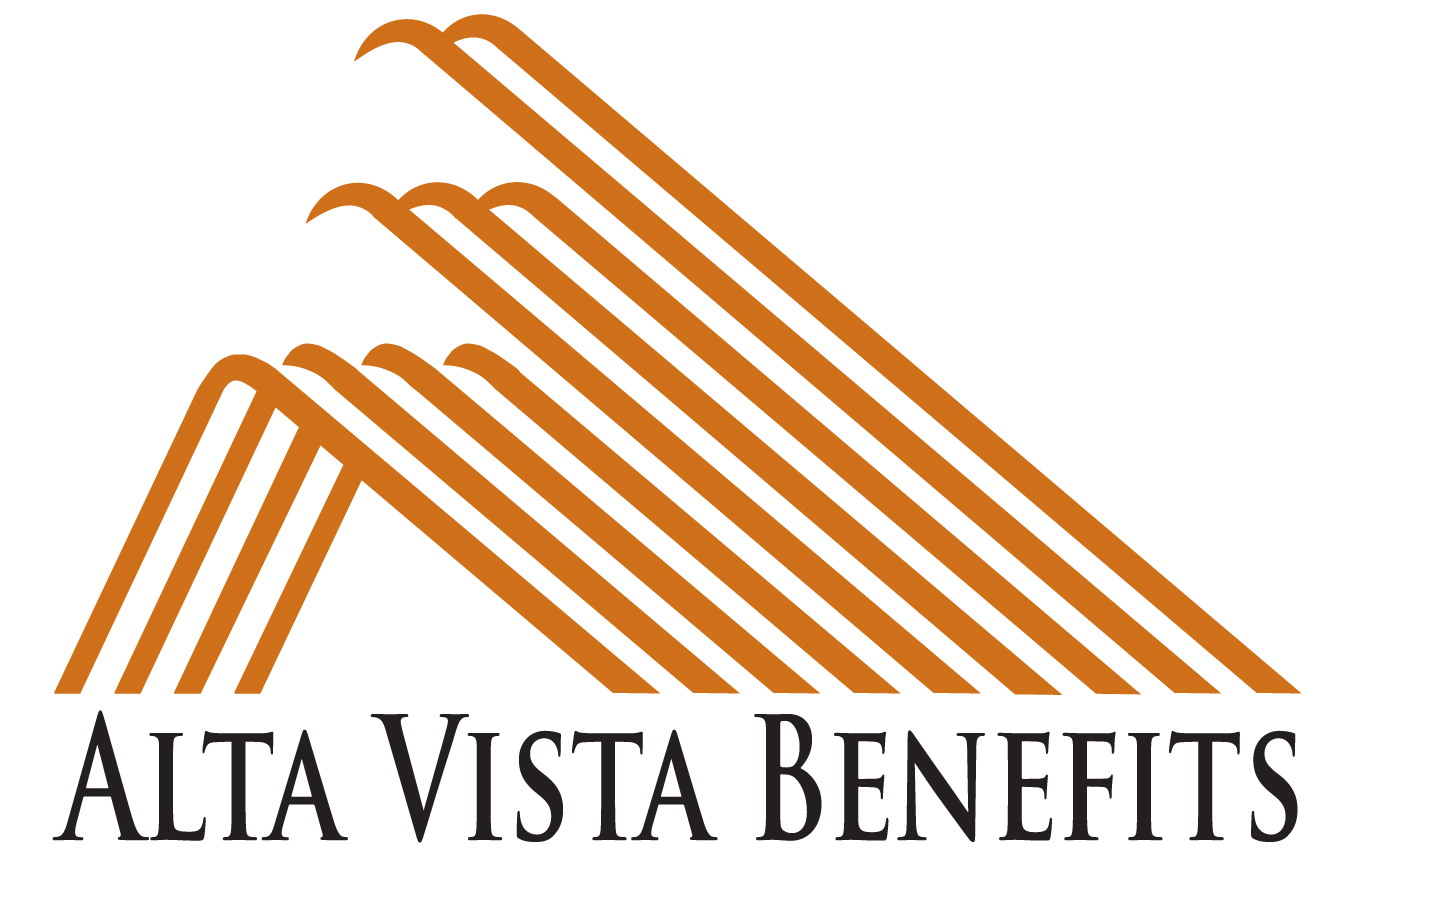 Alta Vista Benefits